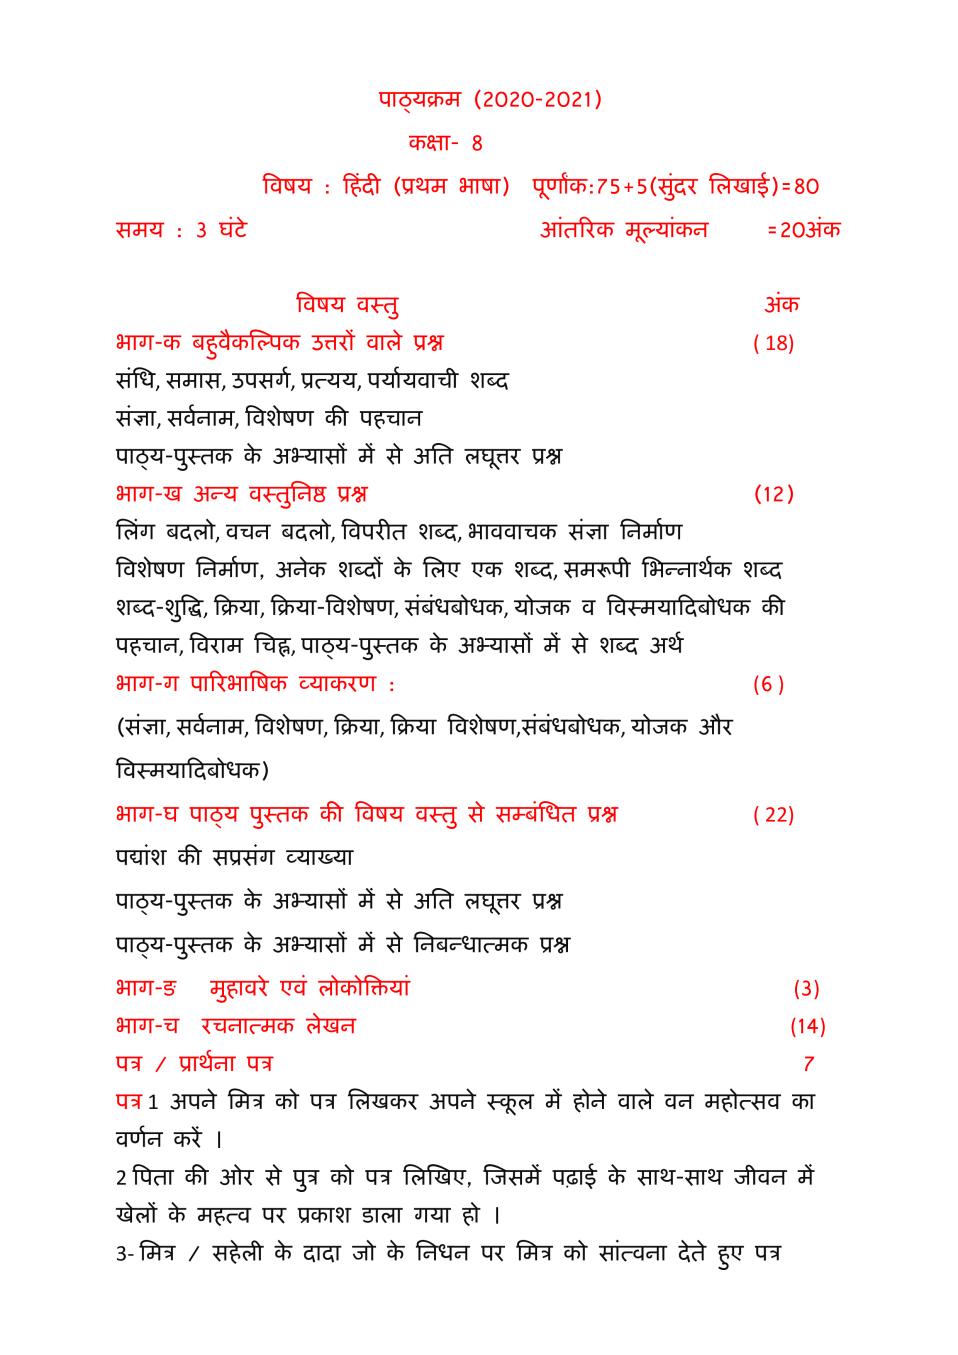 PSEB Syllabus 2020-21 for Class 8 Hindi 1st Language - Page 1